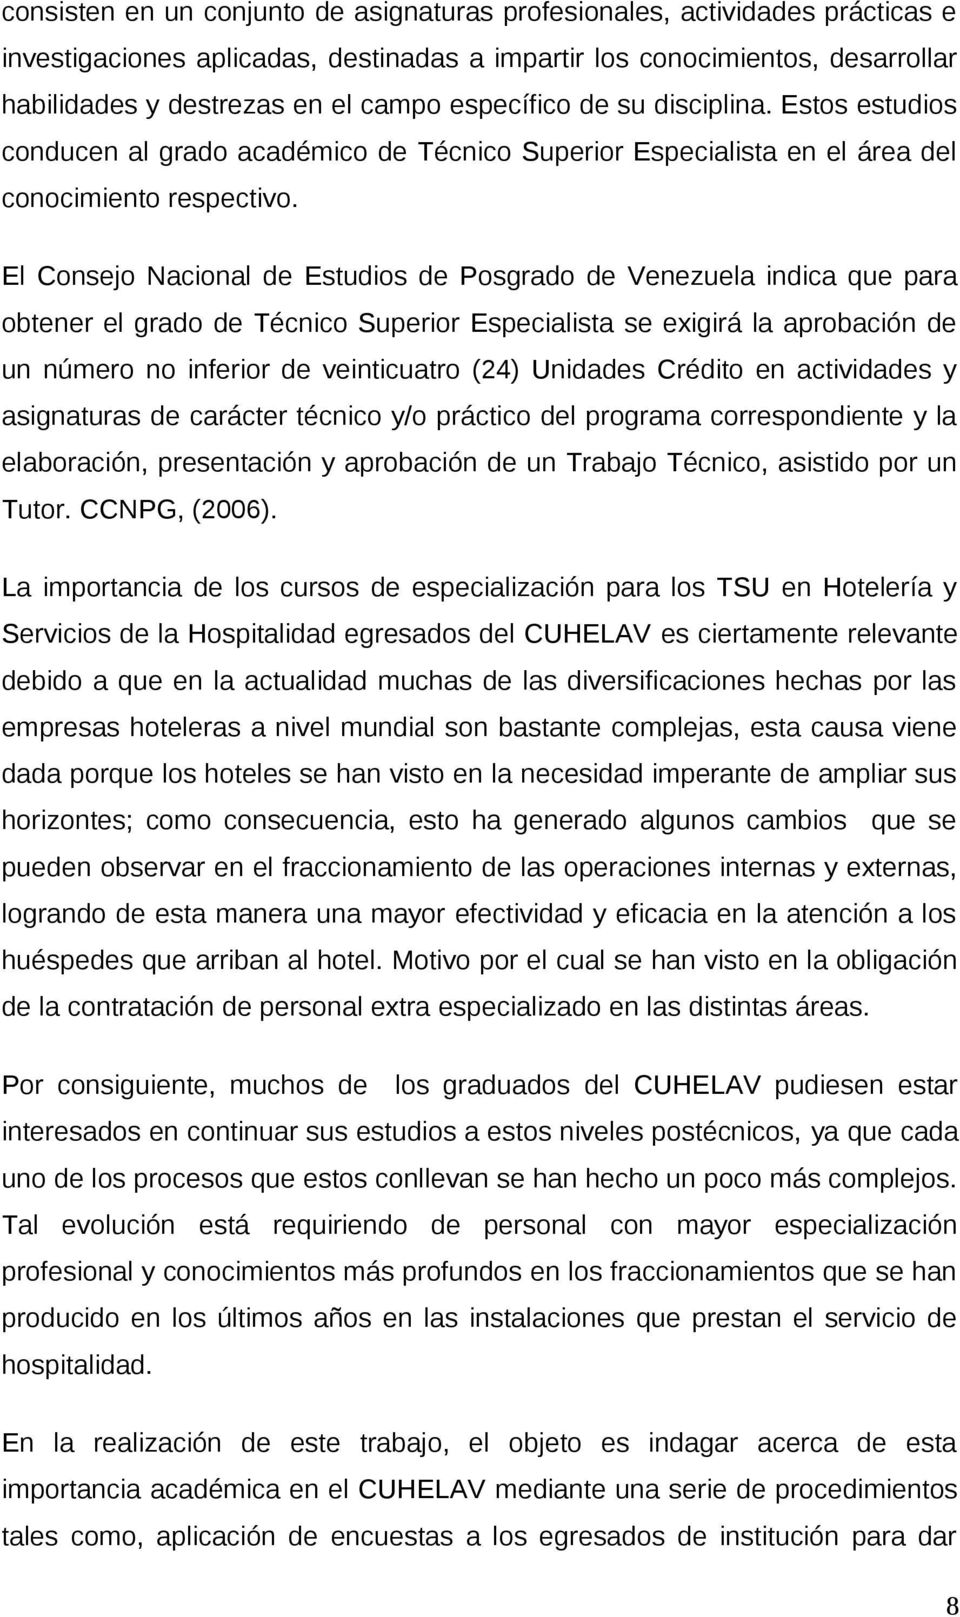 El Consejo Nacional de Estudios de Posgrado de Venezuela indica que para obtener el grado de Técnico Superior Especialista se exigirá la aprobación de un número no inferior de veinticuatro (24)